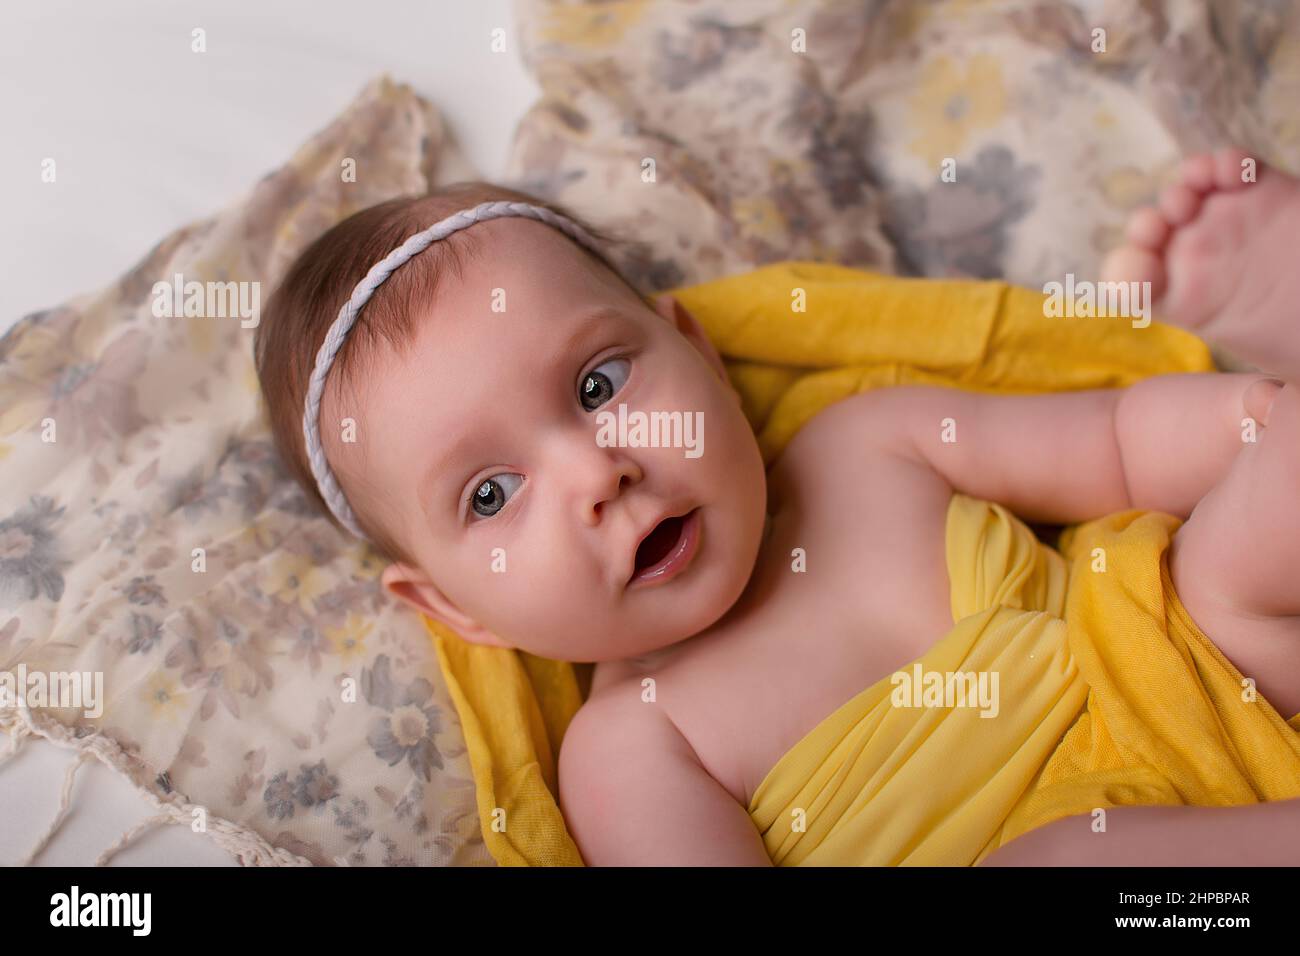 un bebé recién nacido con ropa amarilla, fondo gris, está sobre su espalda.  Feliz infancia, con estilo para recién nacidos y niños Fotografía de stock  - Alamy